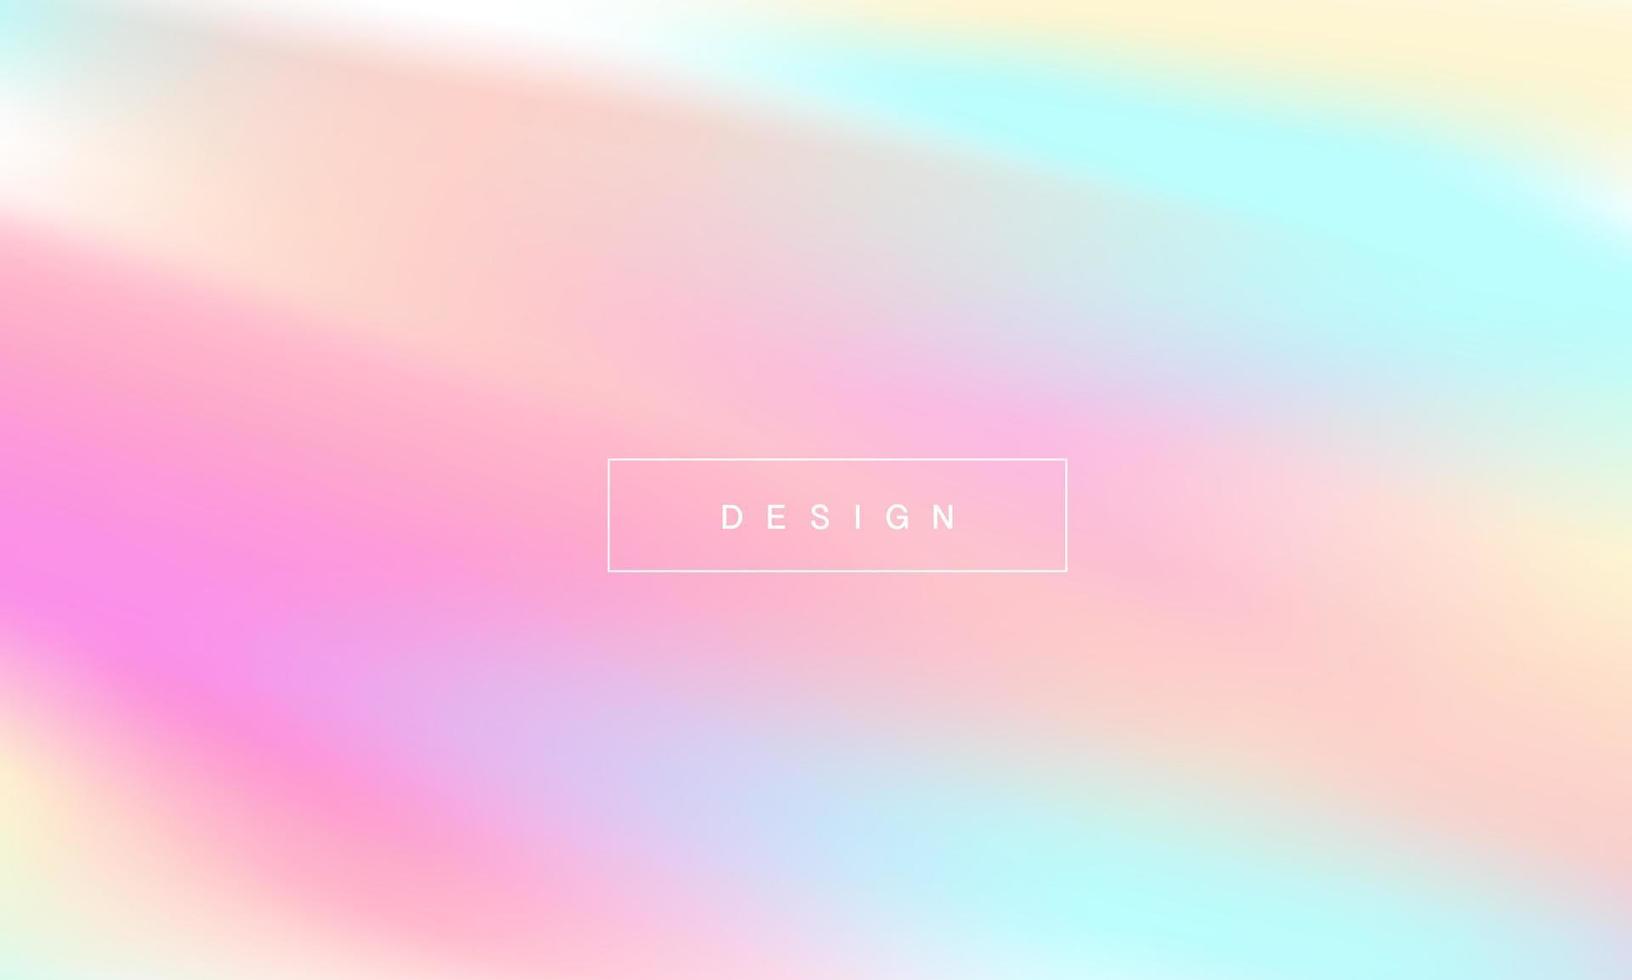 pastel abstracte gradiëntachtergronden. zacht zacht roze, blauw, paars en oranje verlopen voor app, webdesign, webpagina's, banners, wenskaarten. vector illustratie ontwerp